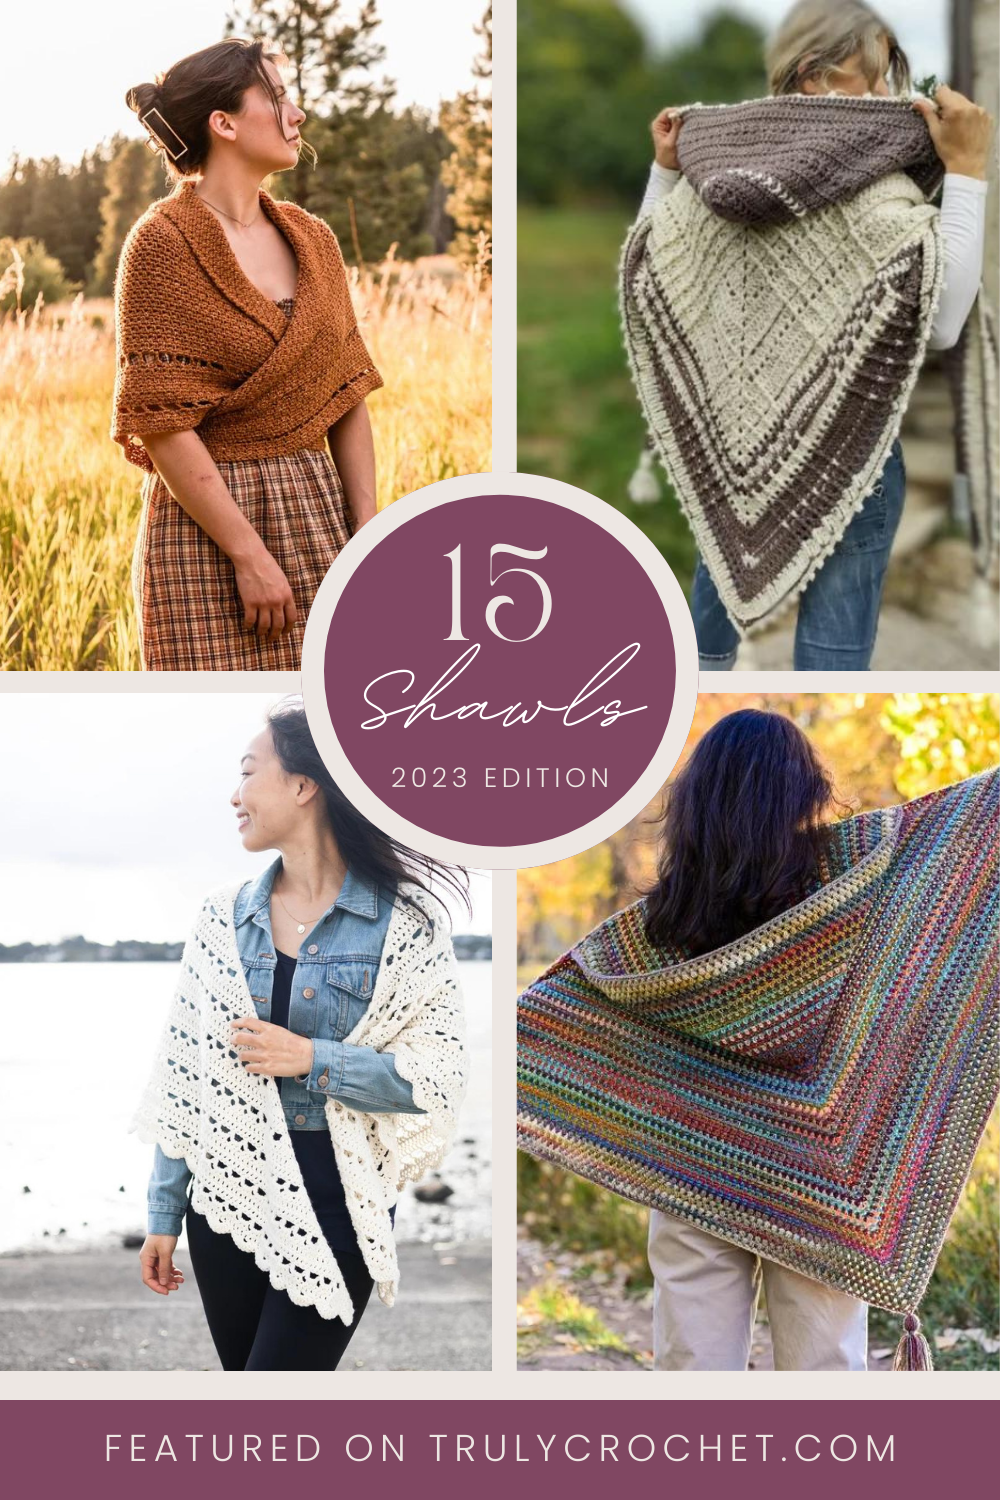 15 Stunning Crochet Shawl Patterns